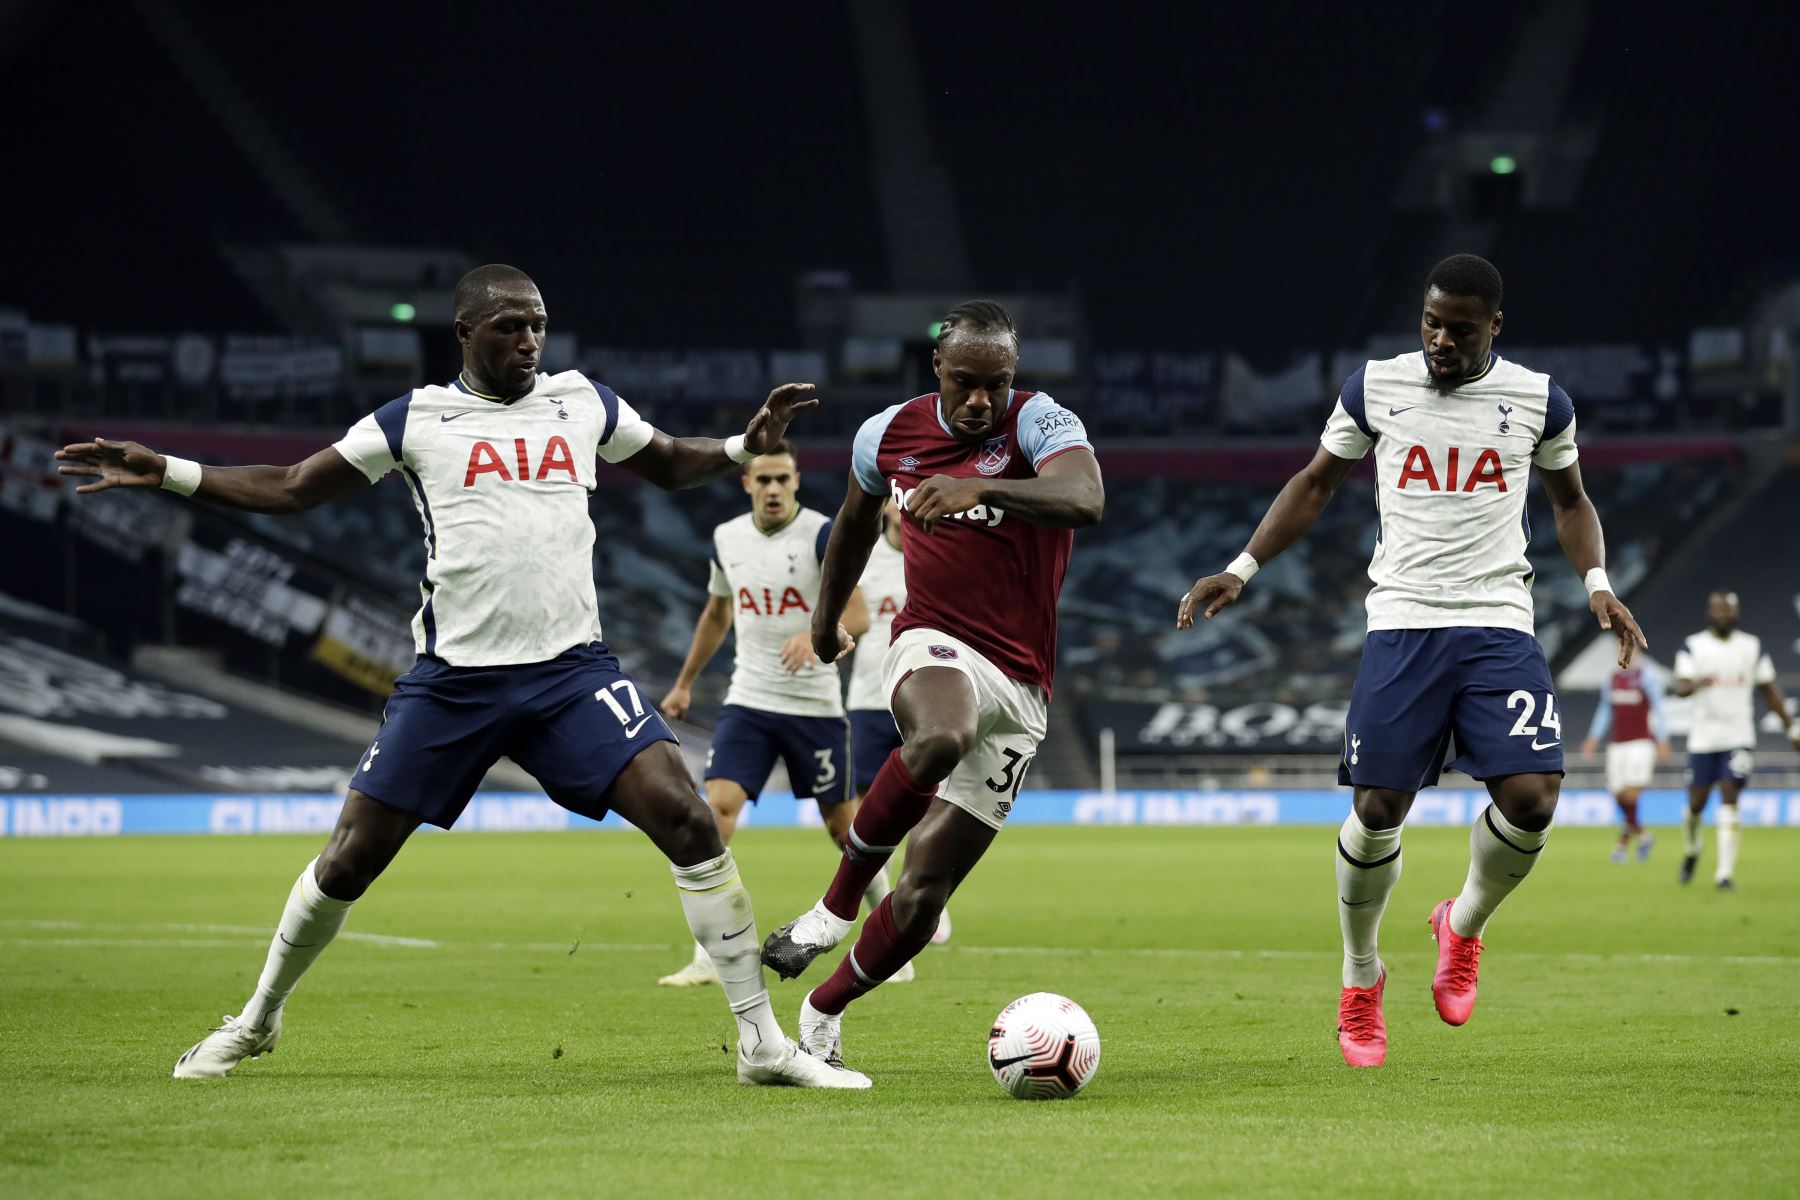 El mediocampista francés del Tottenham Hotspur Moussa Sissoko y el mediocampista inglés del West Ham United, Michail Antonio, compiten por el balón durante el partido de fútbol de la Premier League. Foto: AFP